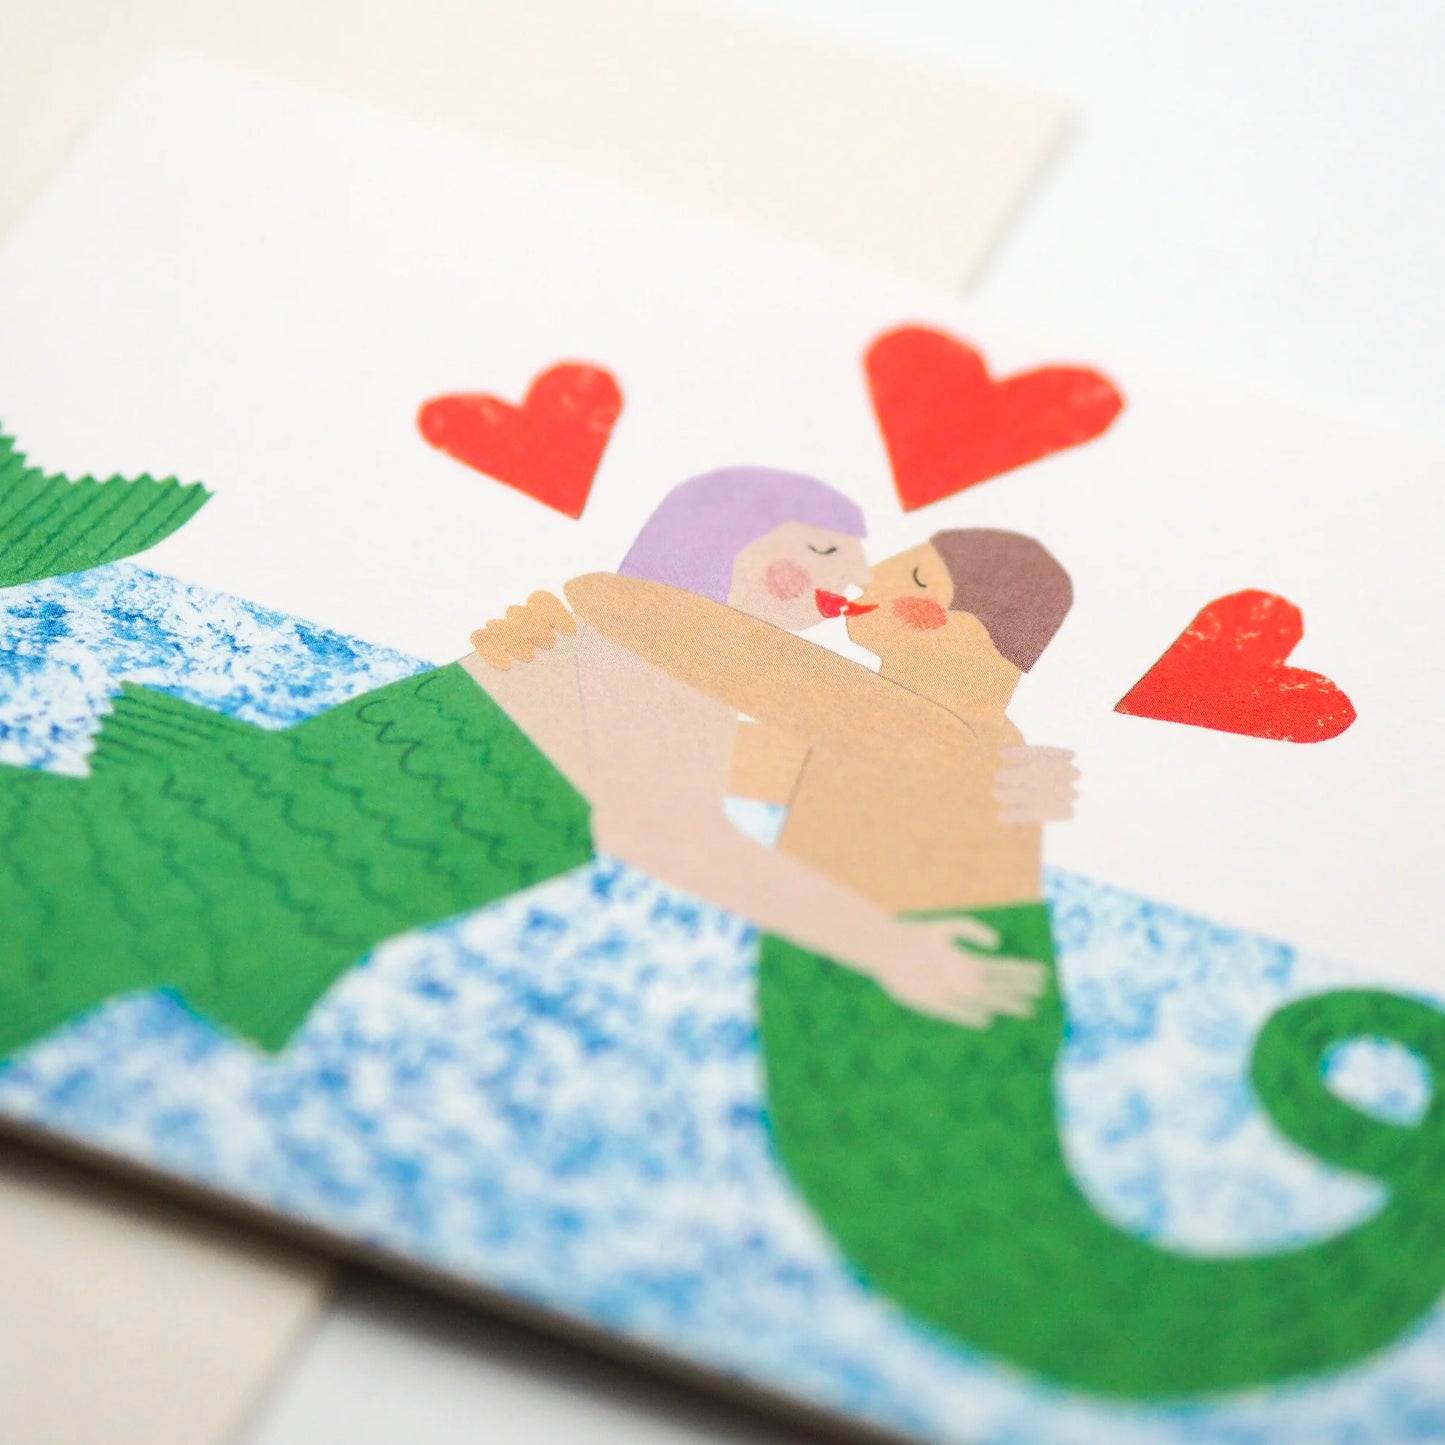 Mermaids Card